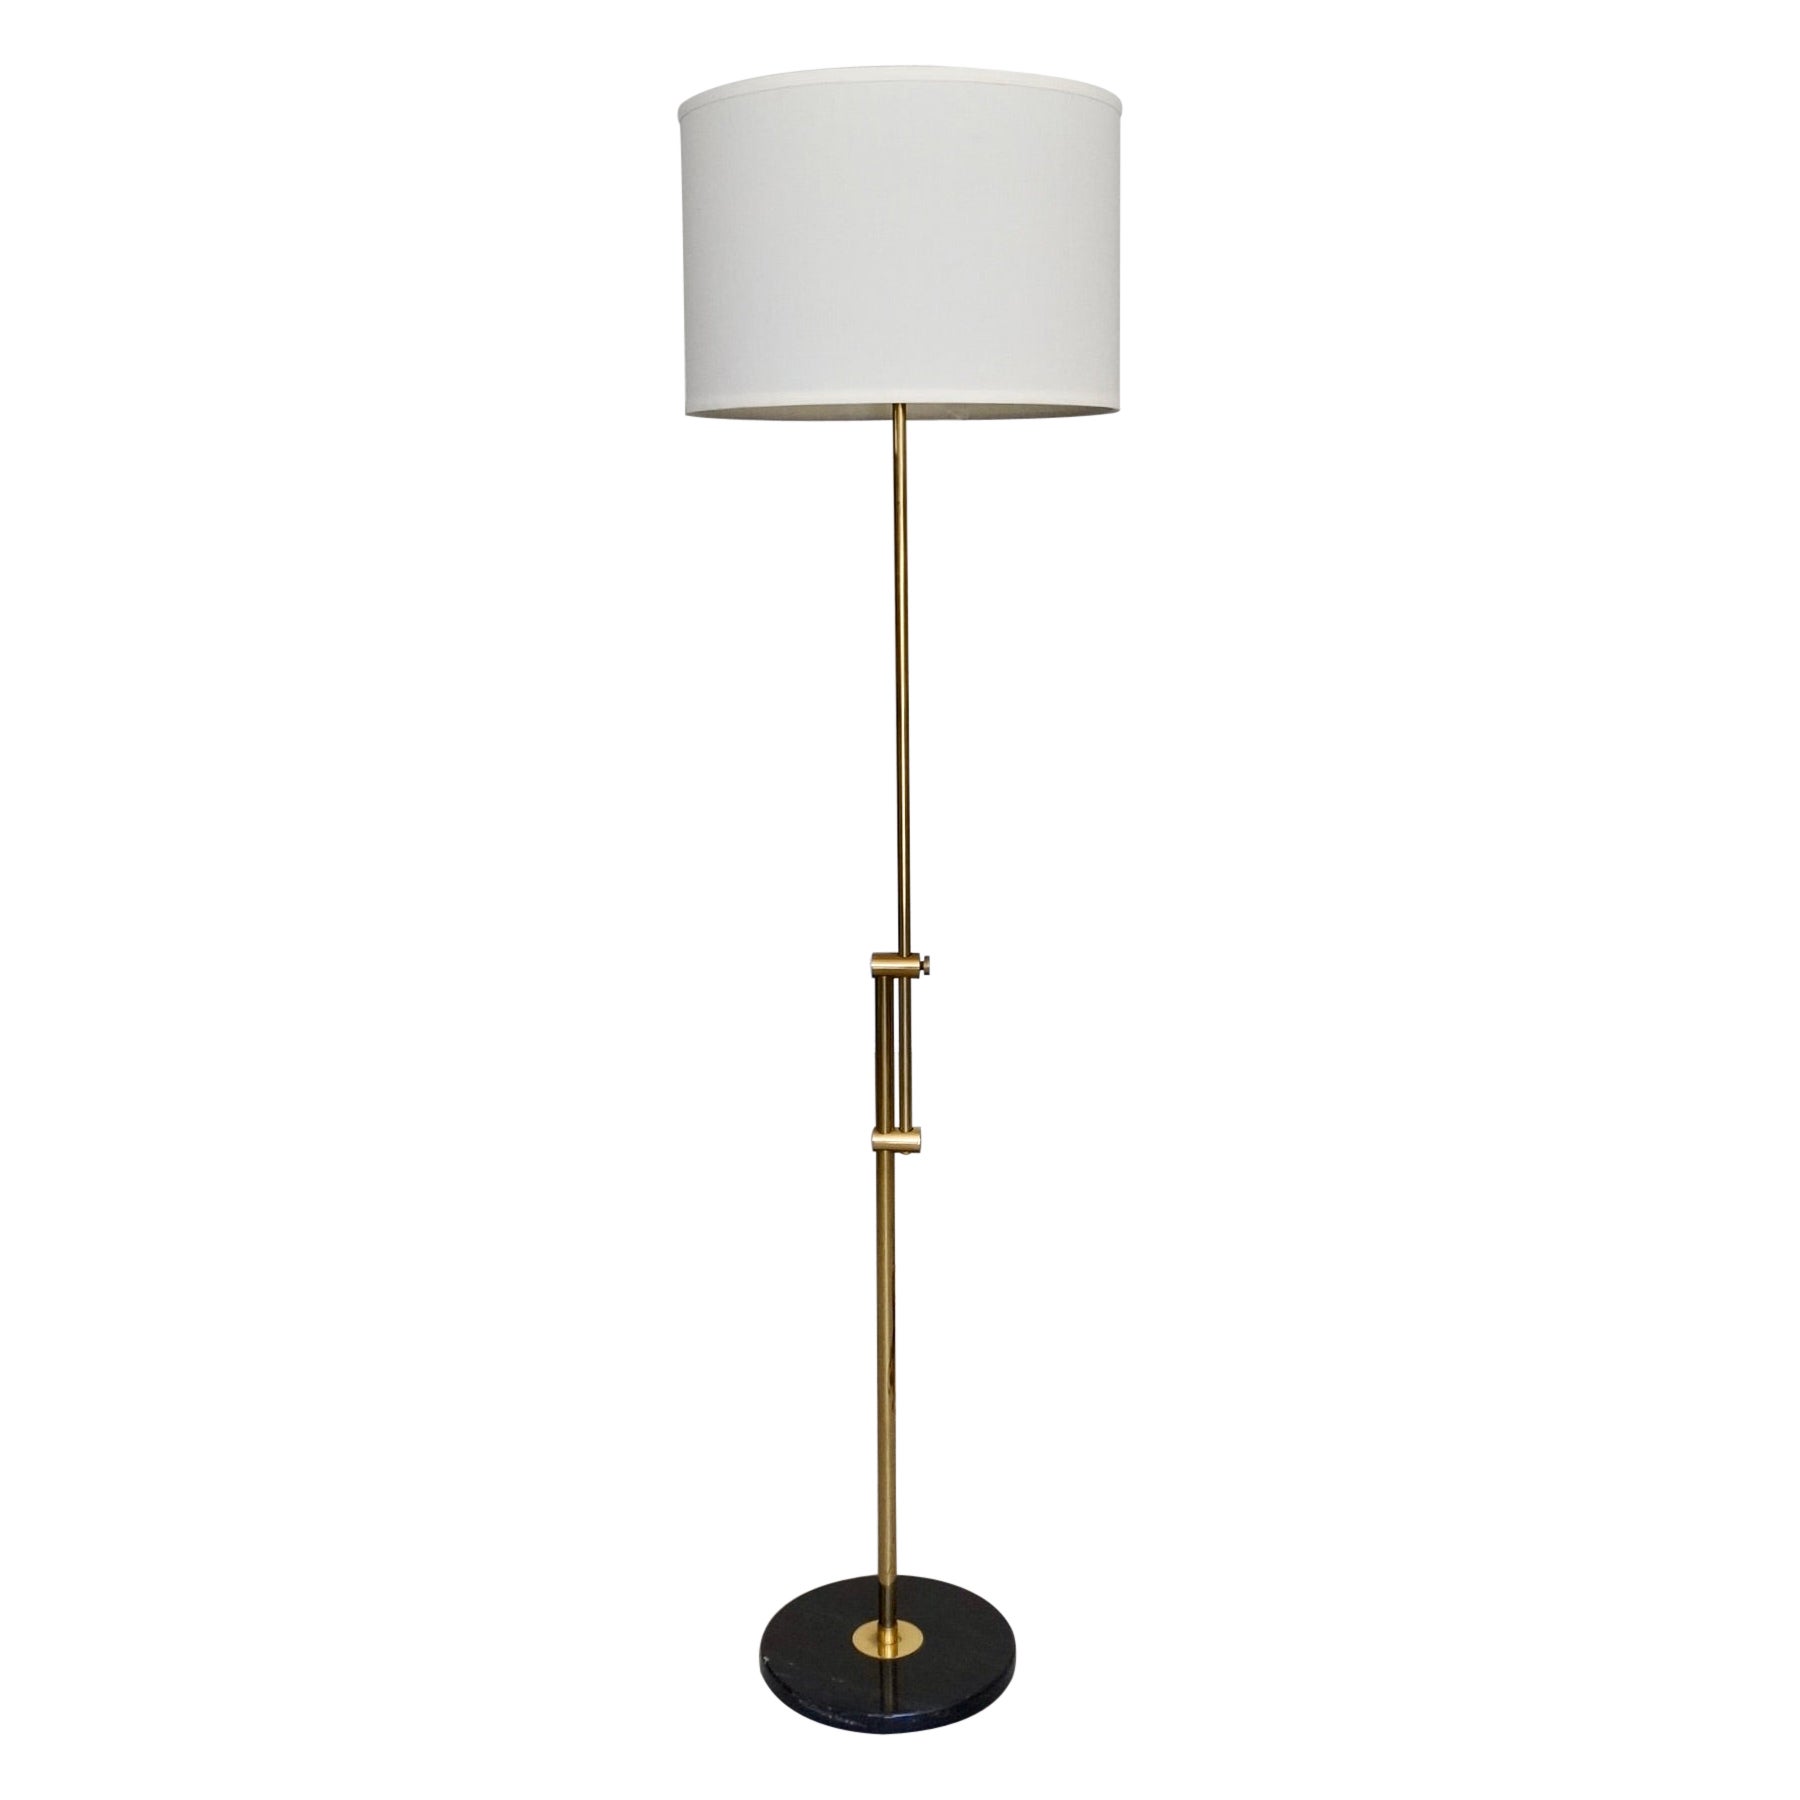 1960's Mid-Century Modern Brass & Marble Adjustable Floor Lamp